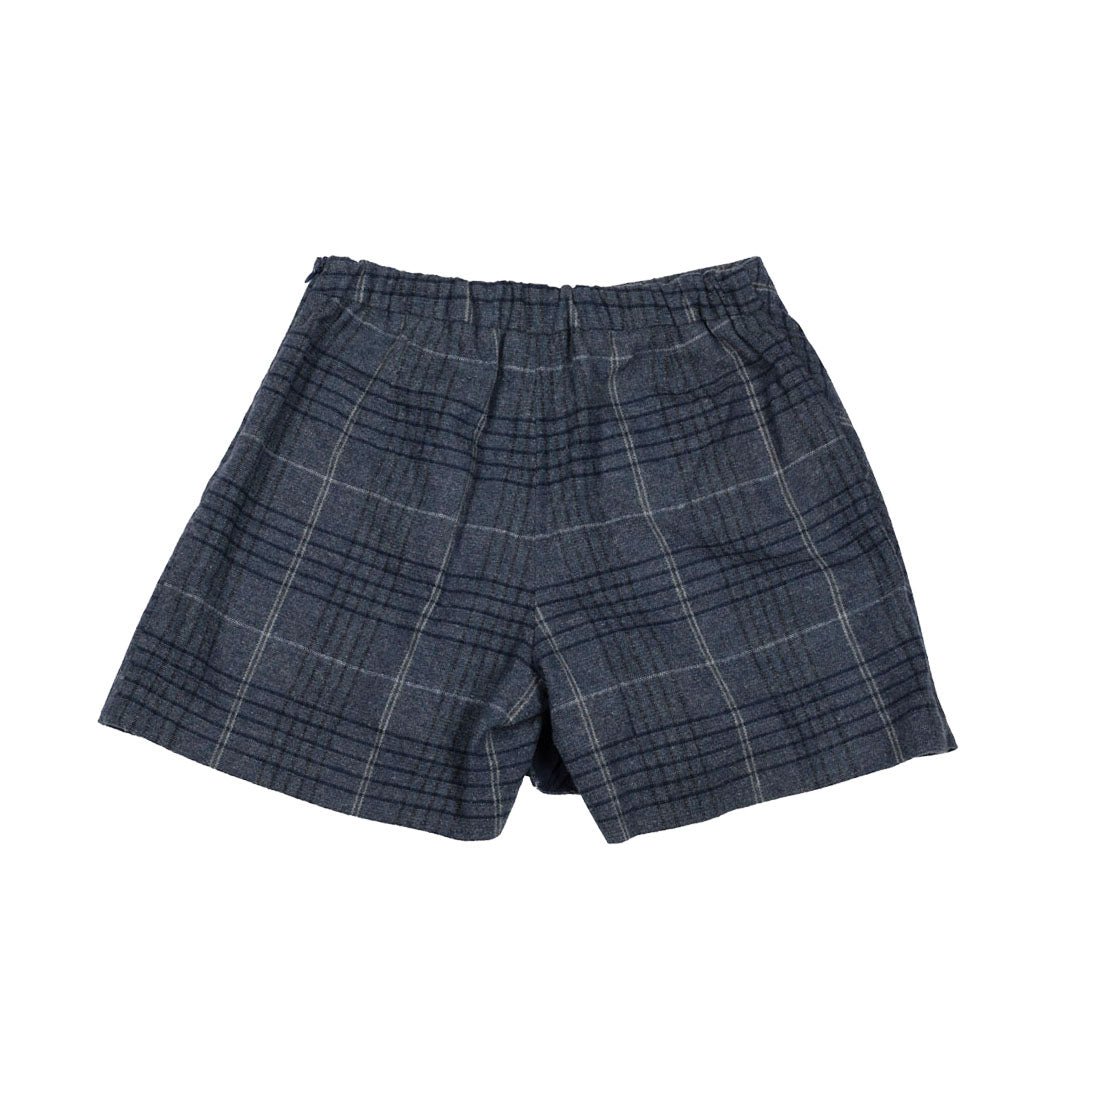 Zara Skirt Shorts For Girls - mymadstore.com